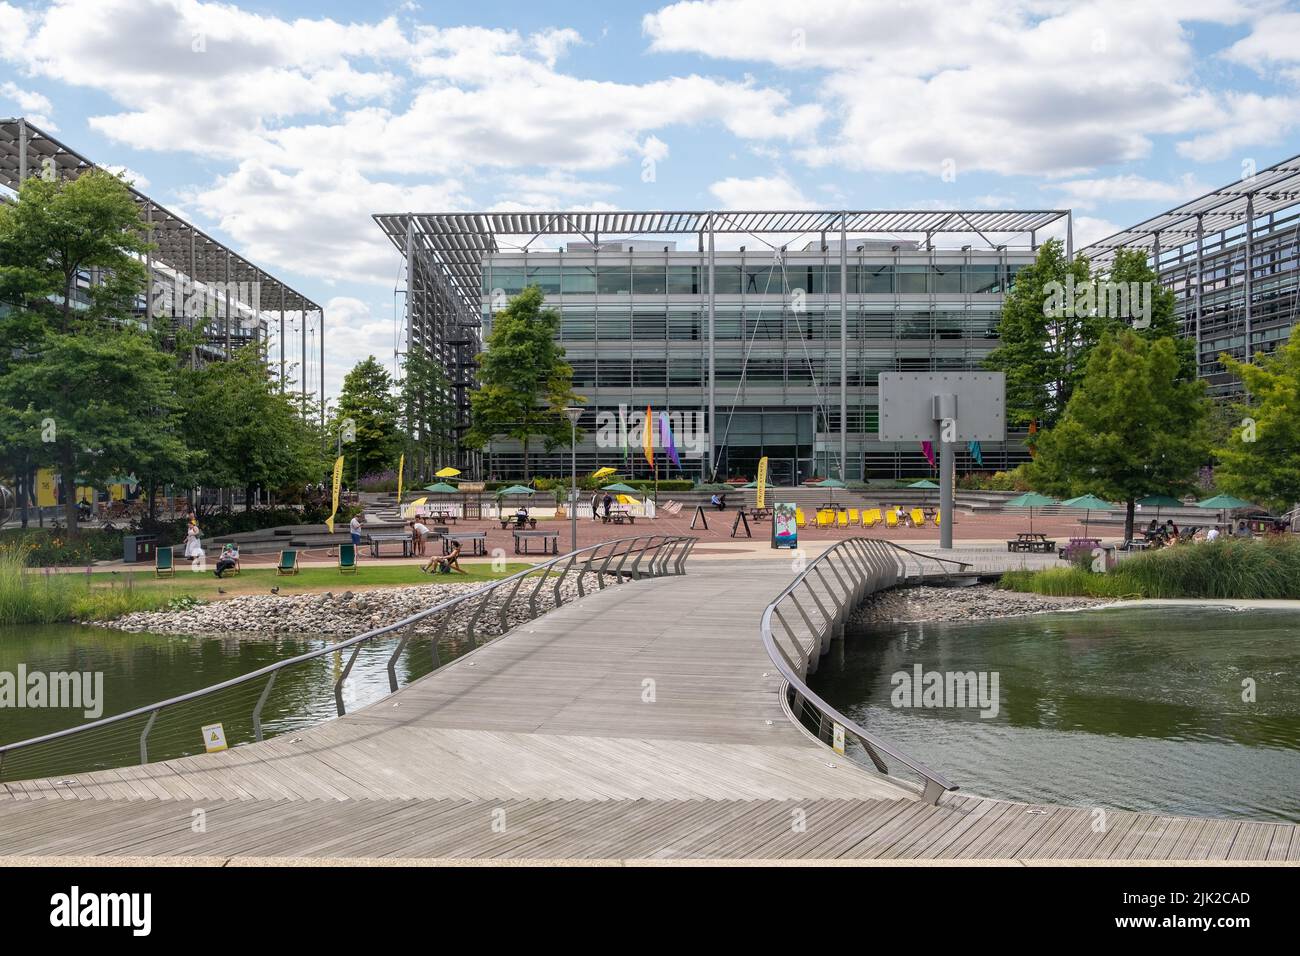 London - Juli 2022: LONDON - Chiswick Park in West London. Ein modernes Bürogebäude mit landschaftlich gestaltetem Gemeinschaftsraum Stockfoto